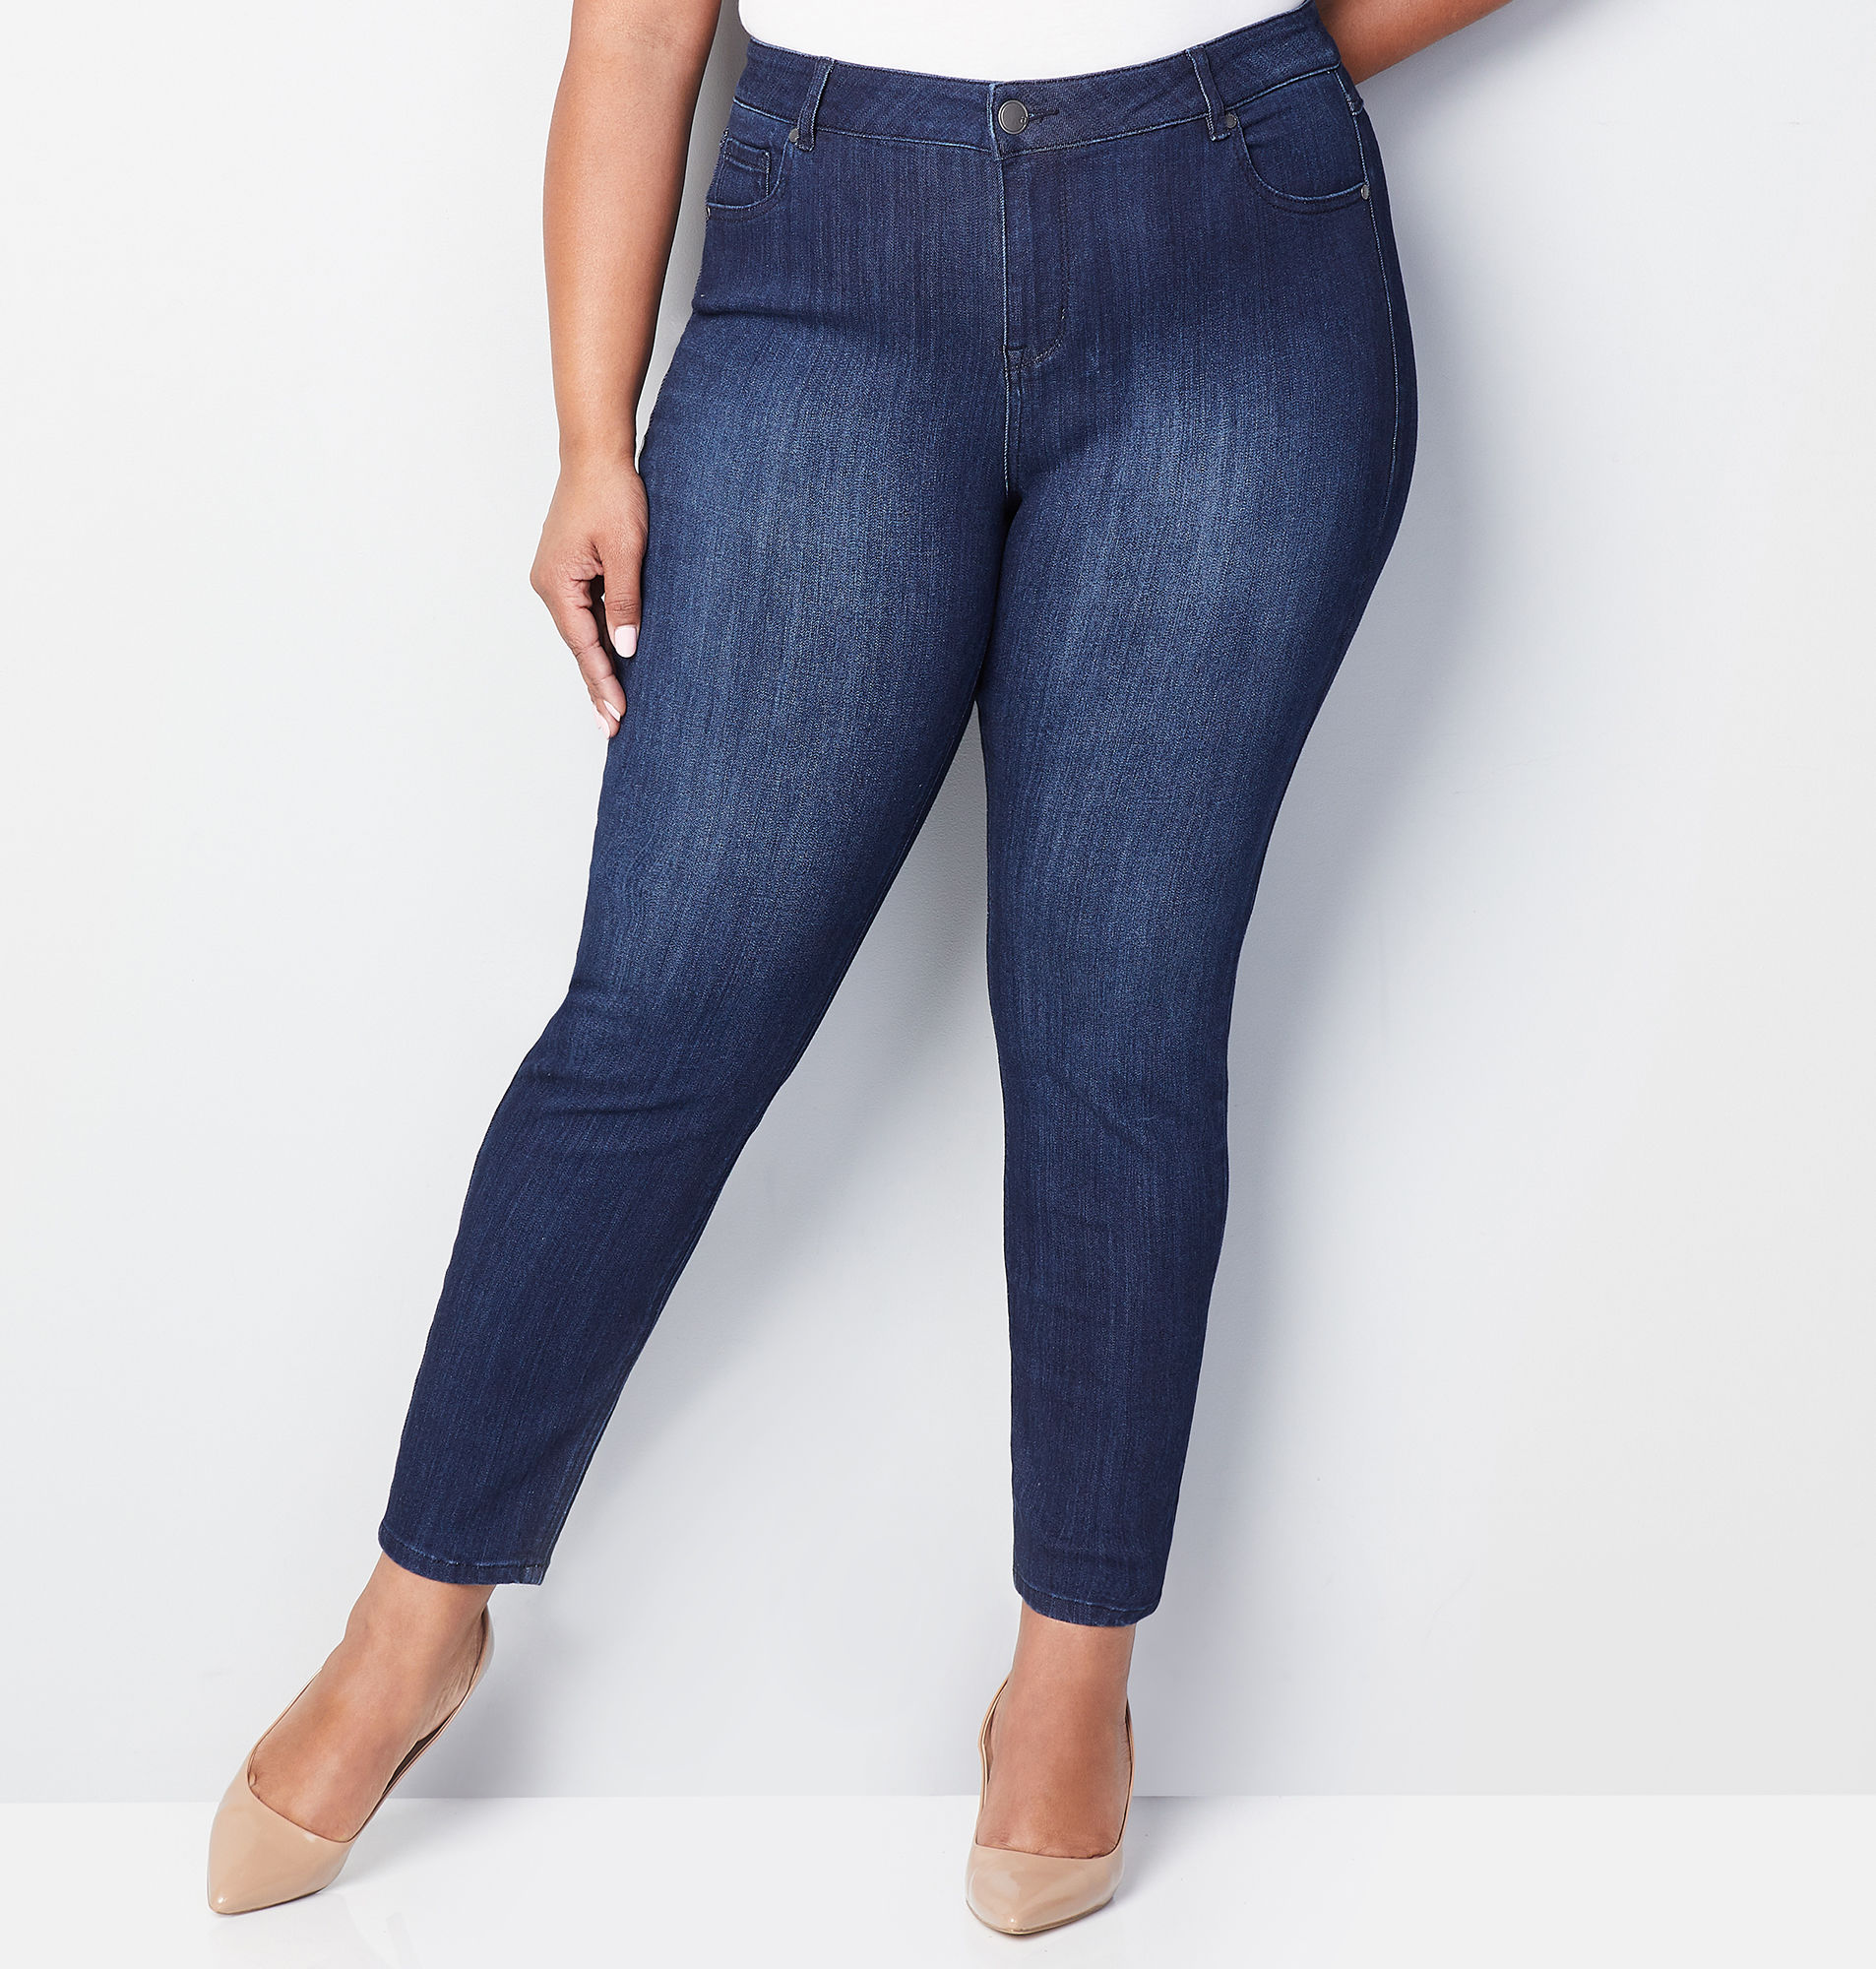 Shop Women's Plus Size Stretch Jeans 14-32| Avenue.com